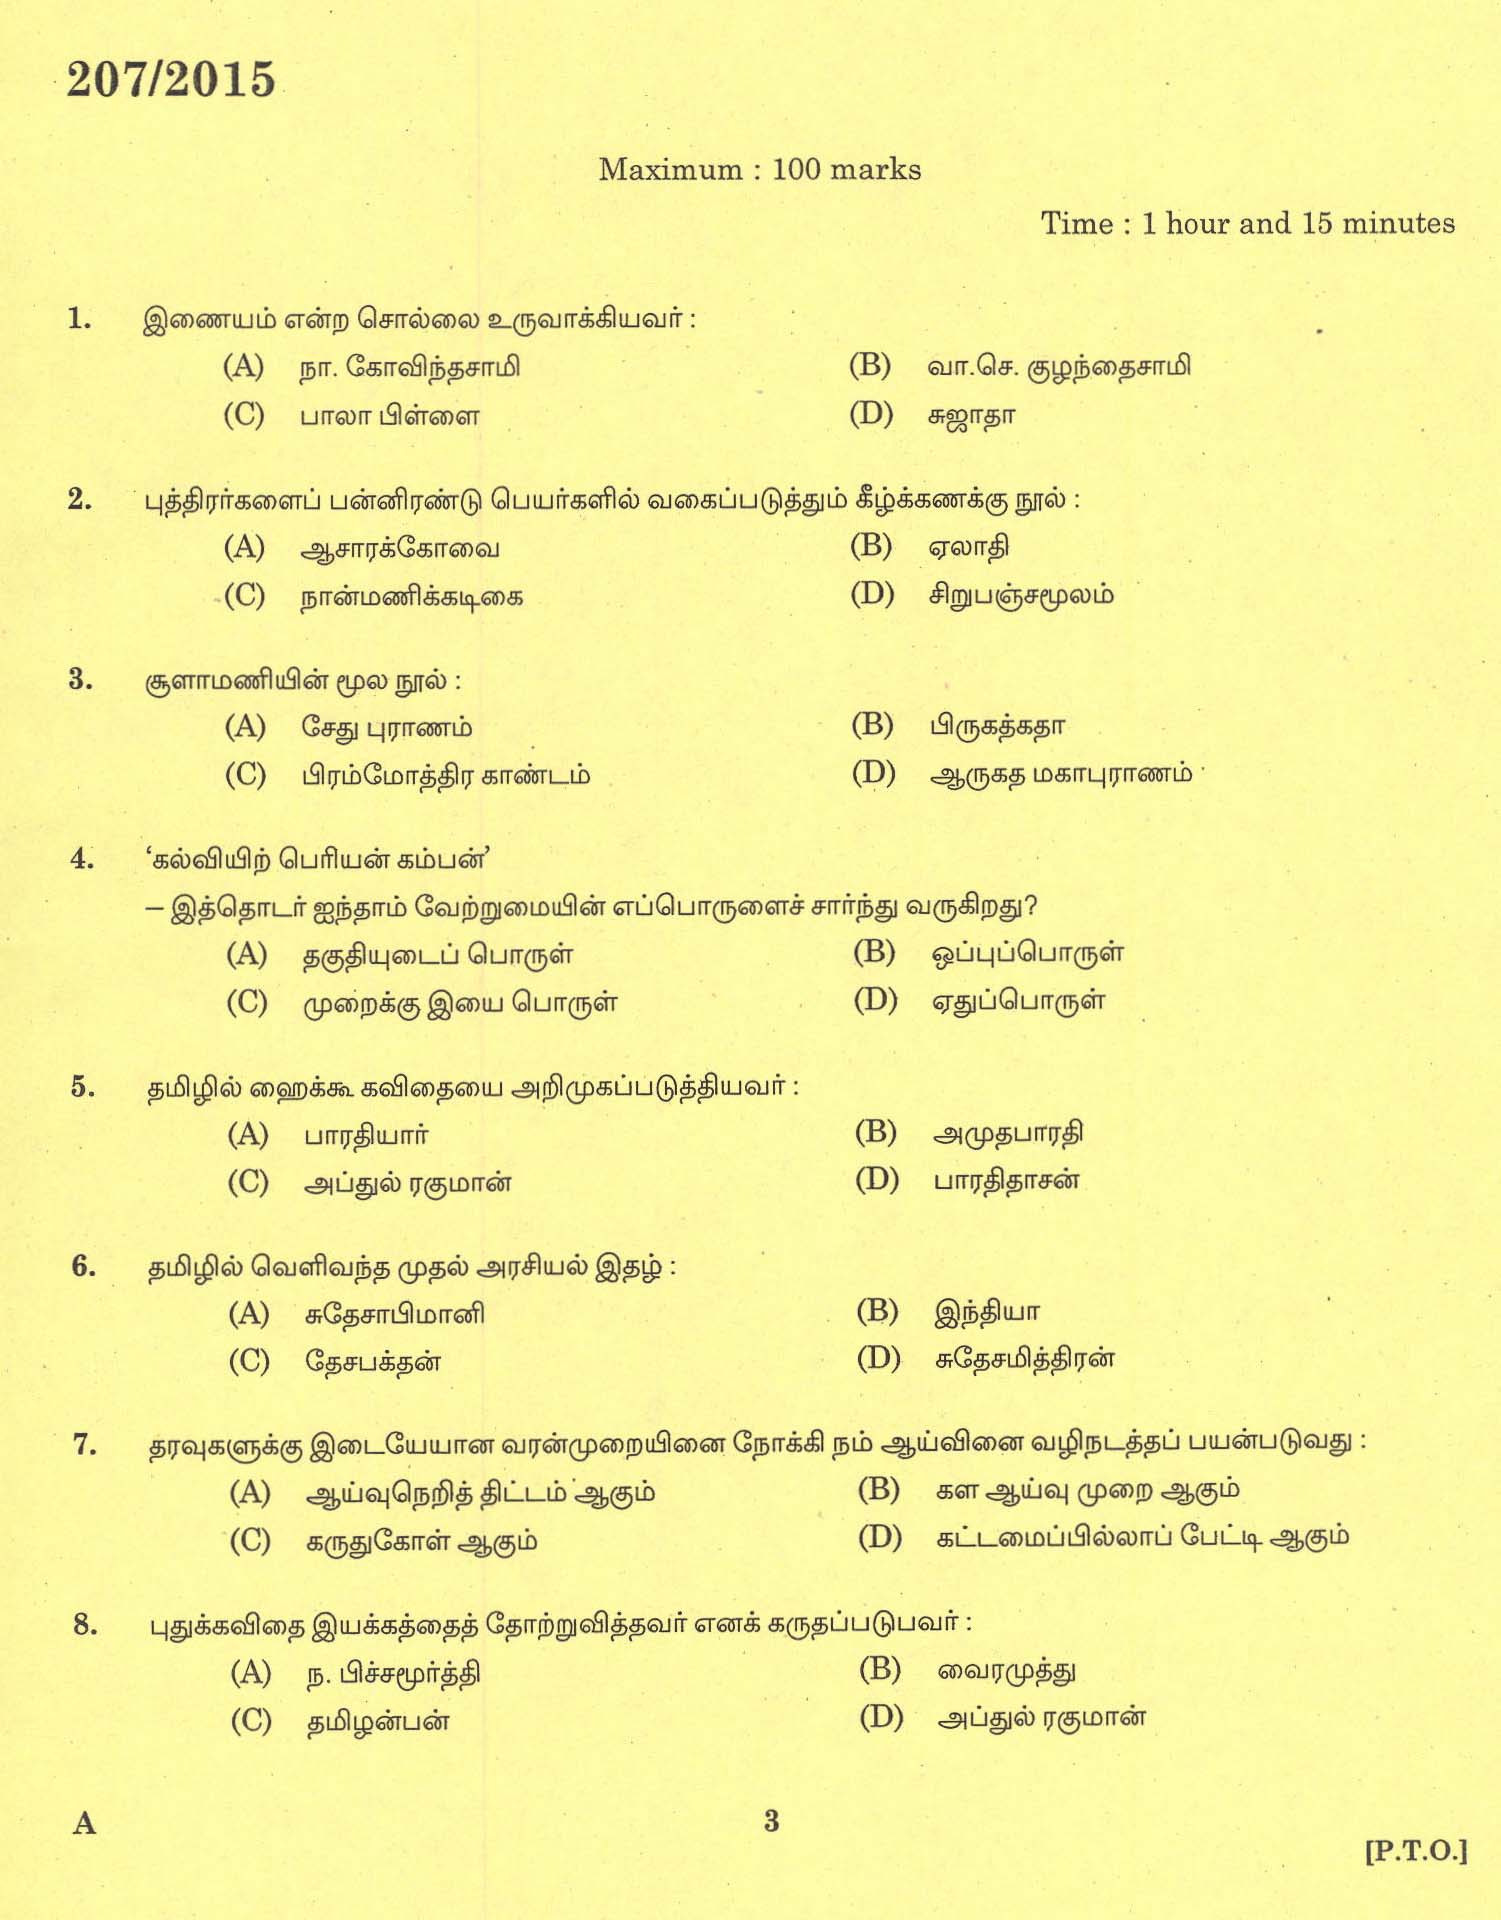 KPSC Lecturer in Tamil Exam 2015 Code 2072015 1